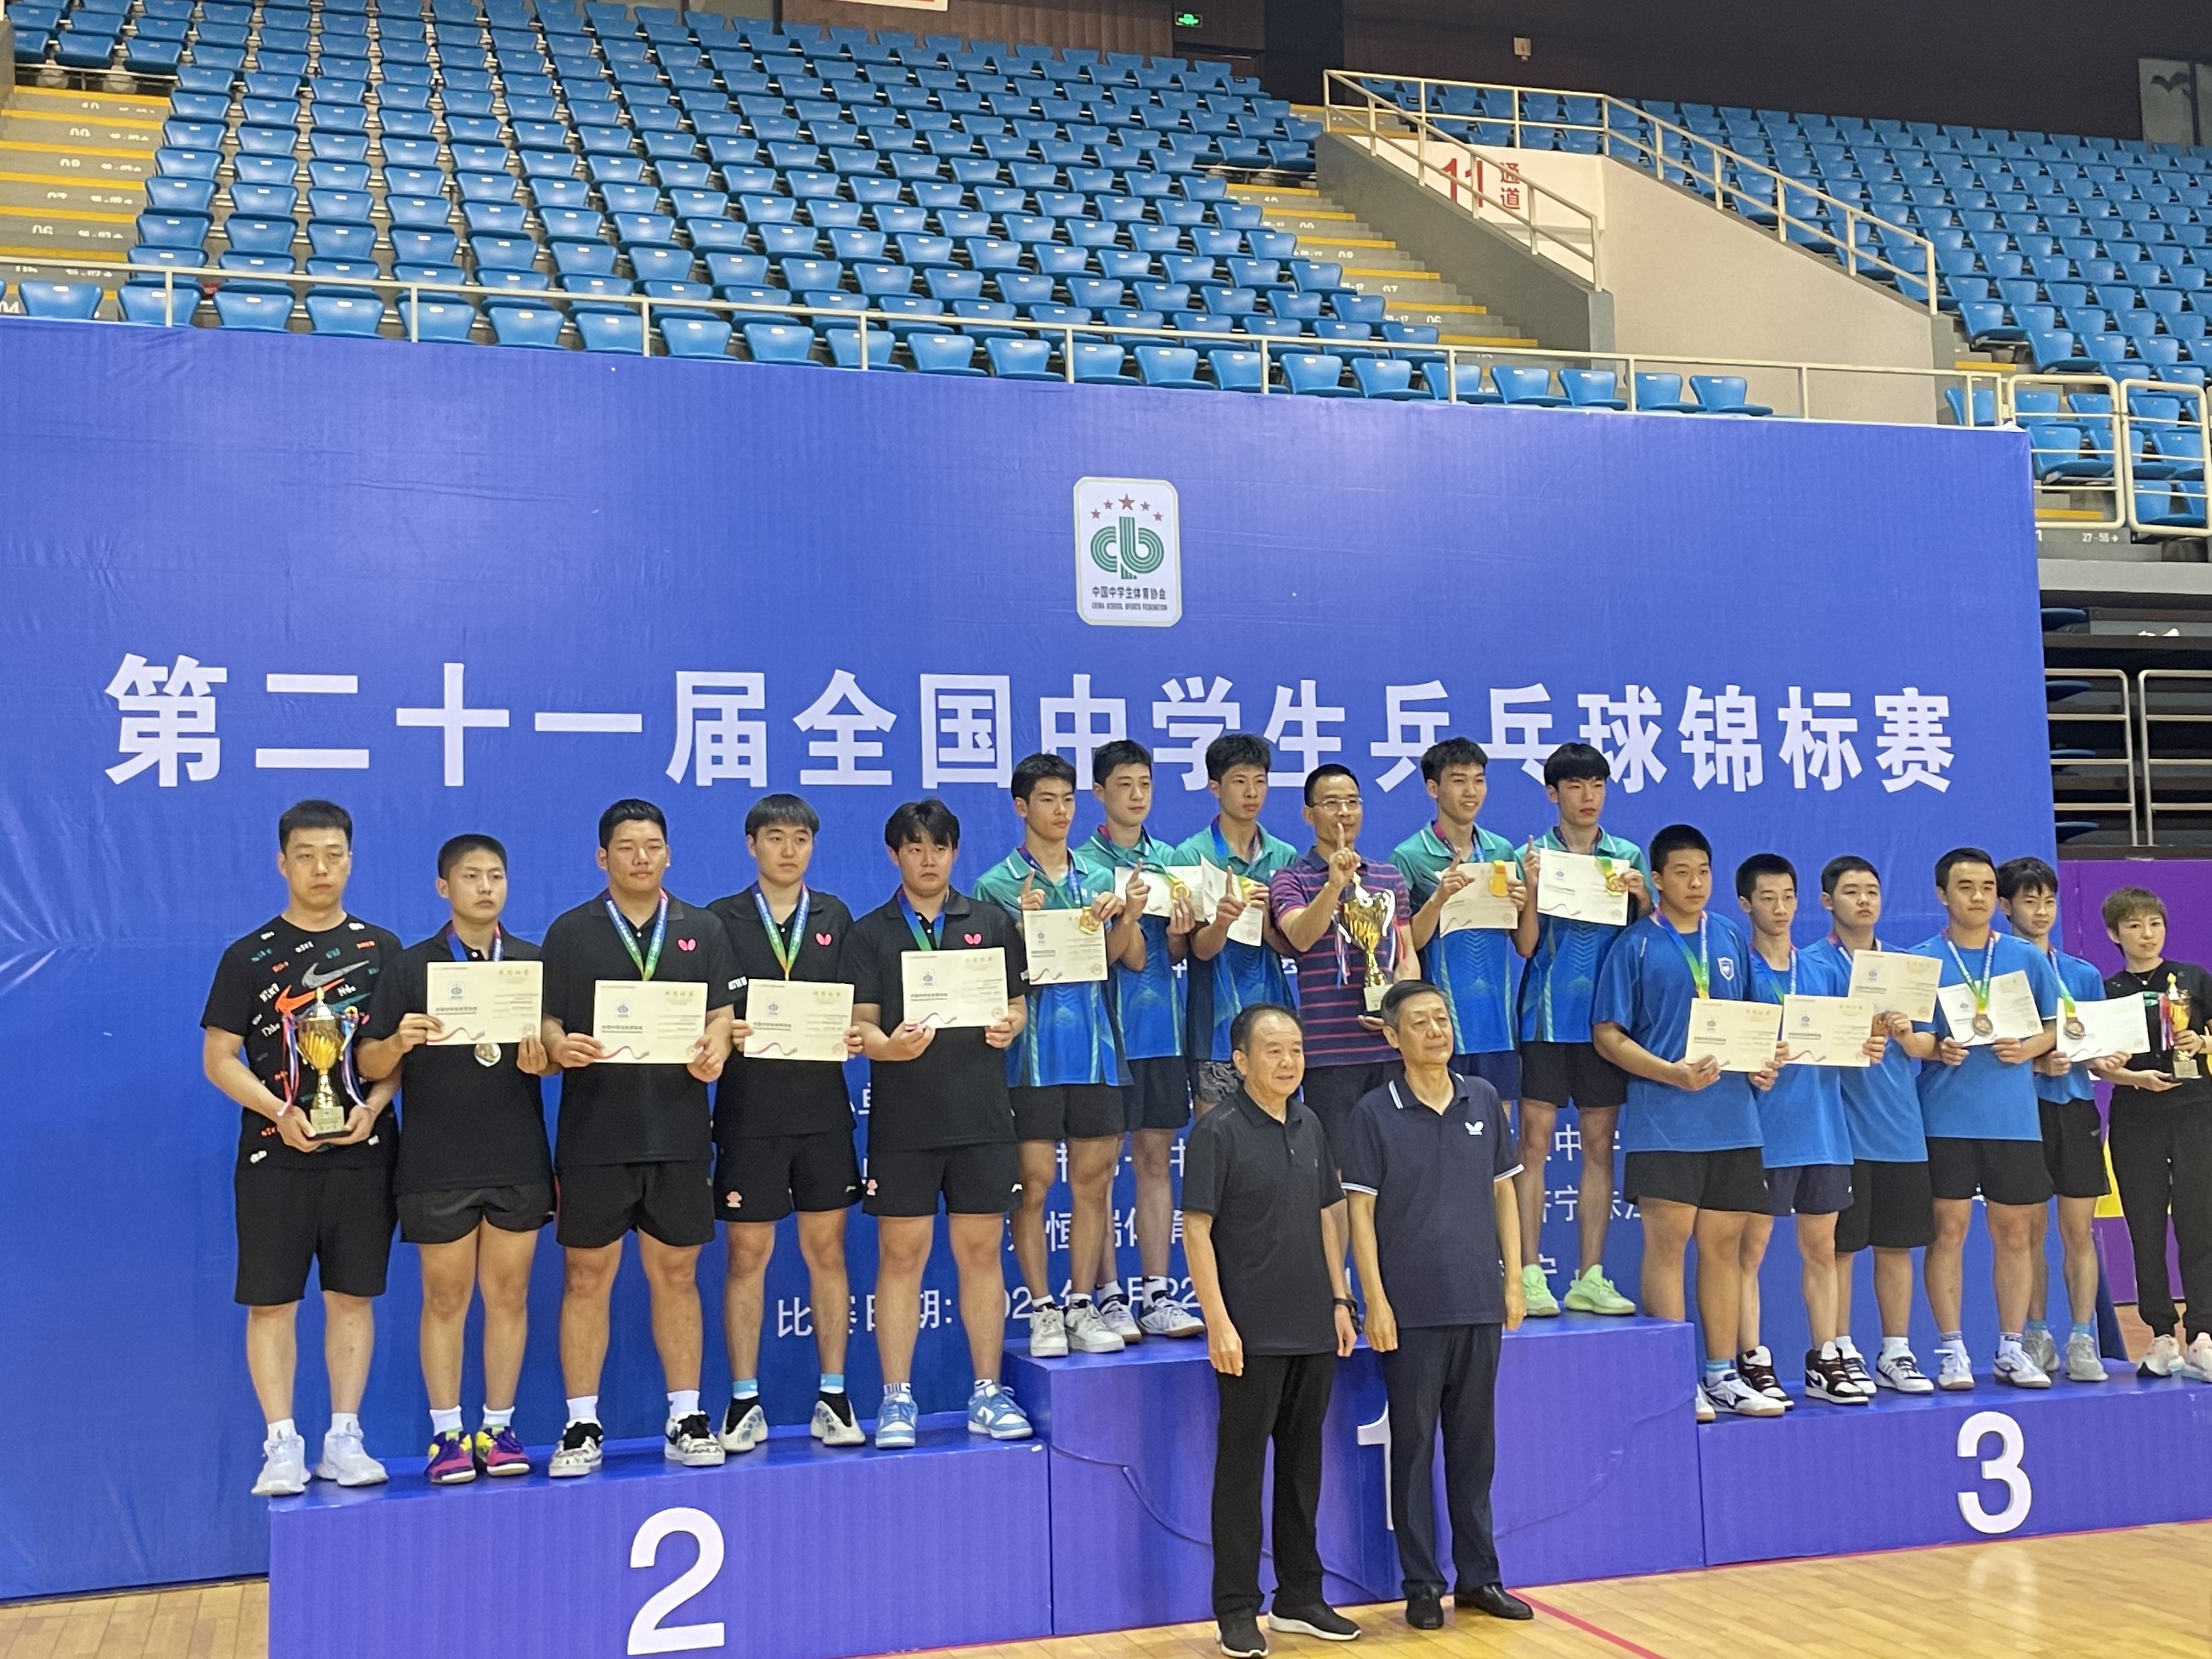 全国第一柯桥中学乒乓健儿勇夺全国中学生乒乓球锦标赛男子团体冠军